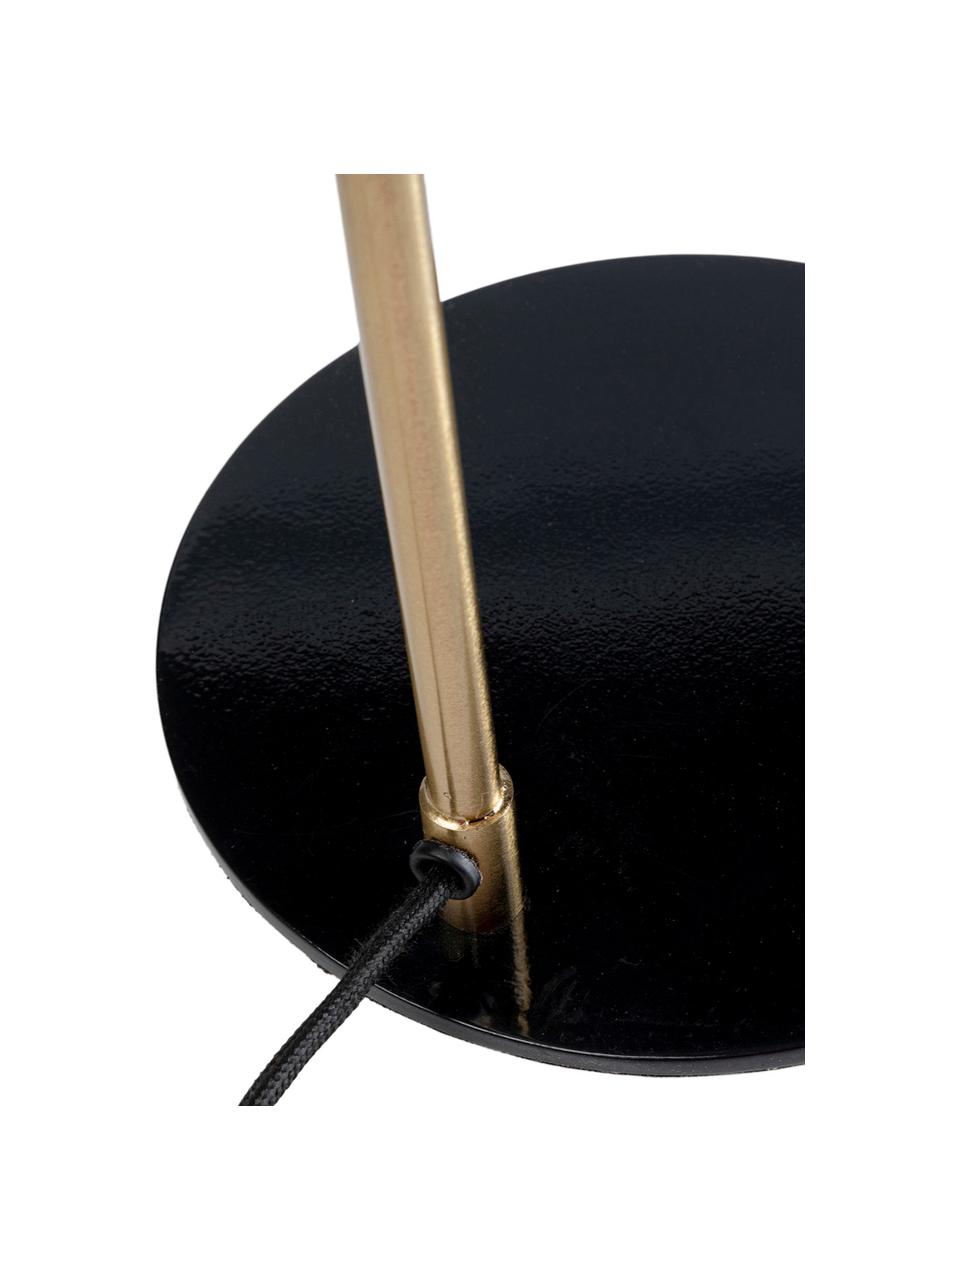 Grosse Schreibtischlampe Clive, Lampenschirm: Stahl, pulverbeschichtet, Messingfarben, Schwarz, 27 x 56 cm